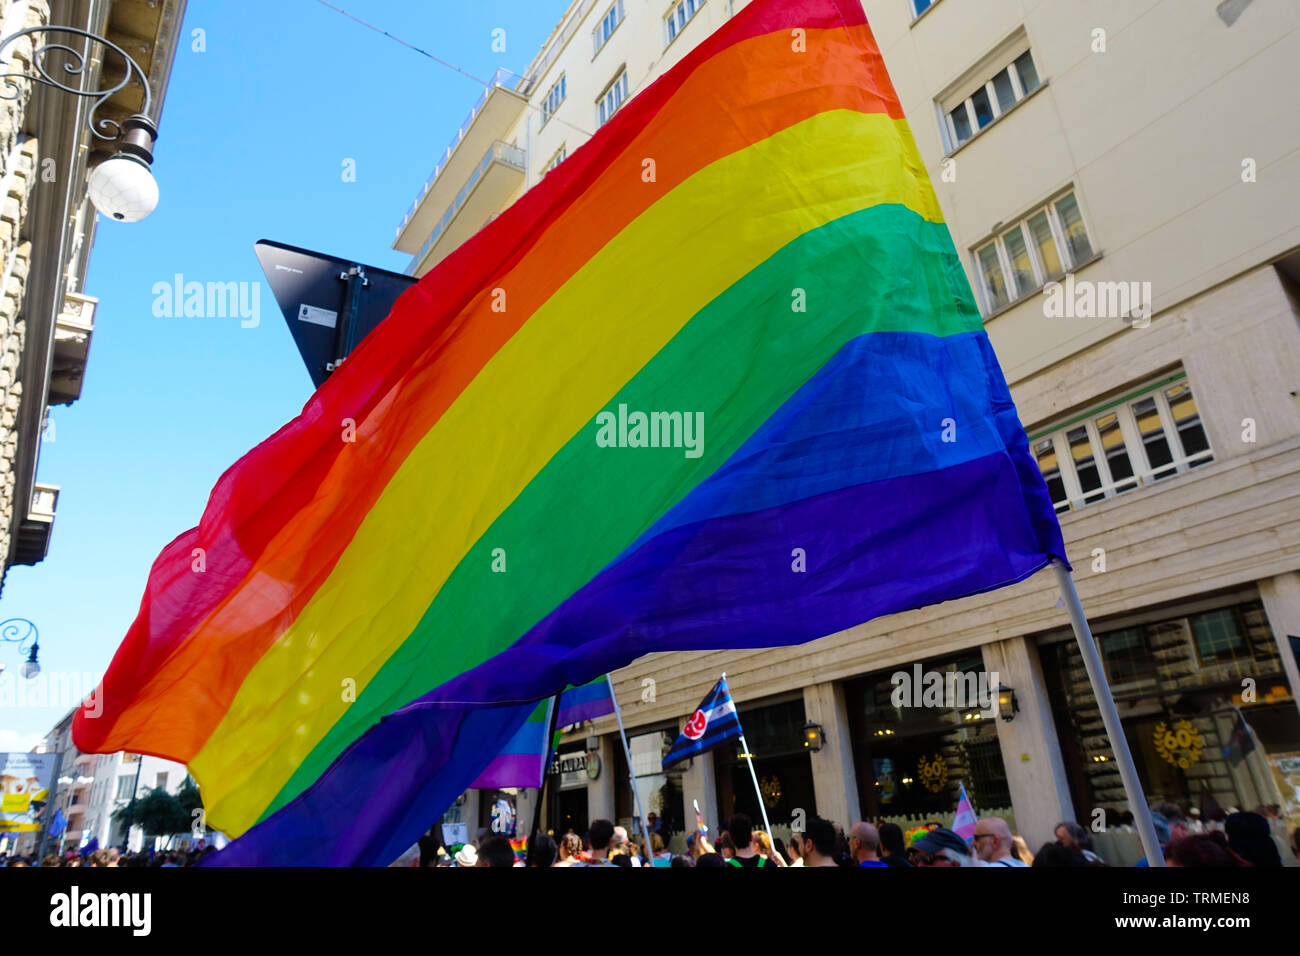 Trieste Italia - 8 giugno 2019 GAY PRIDE PARADE FVG LGBT marzo nella promozione della parità di trattamento e la tolleranza in una città costiera di Trieste Foto Stock